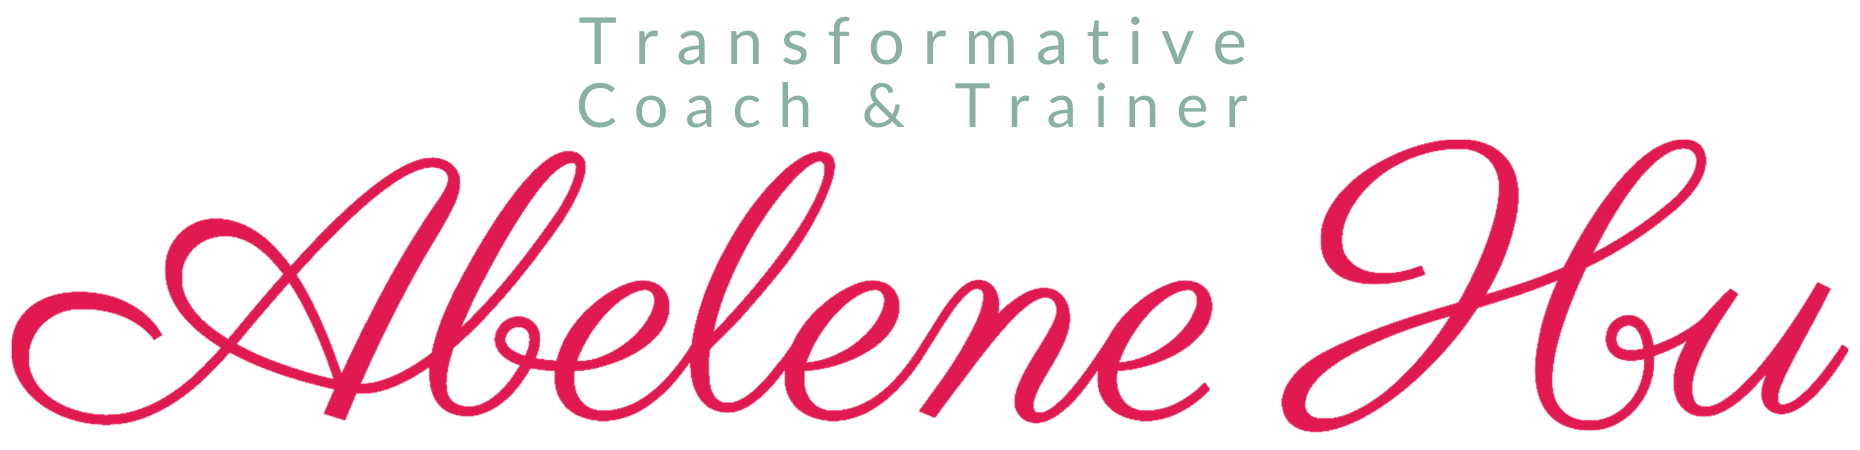 Transformative Coach & Trainer - Abelene Hu